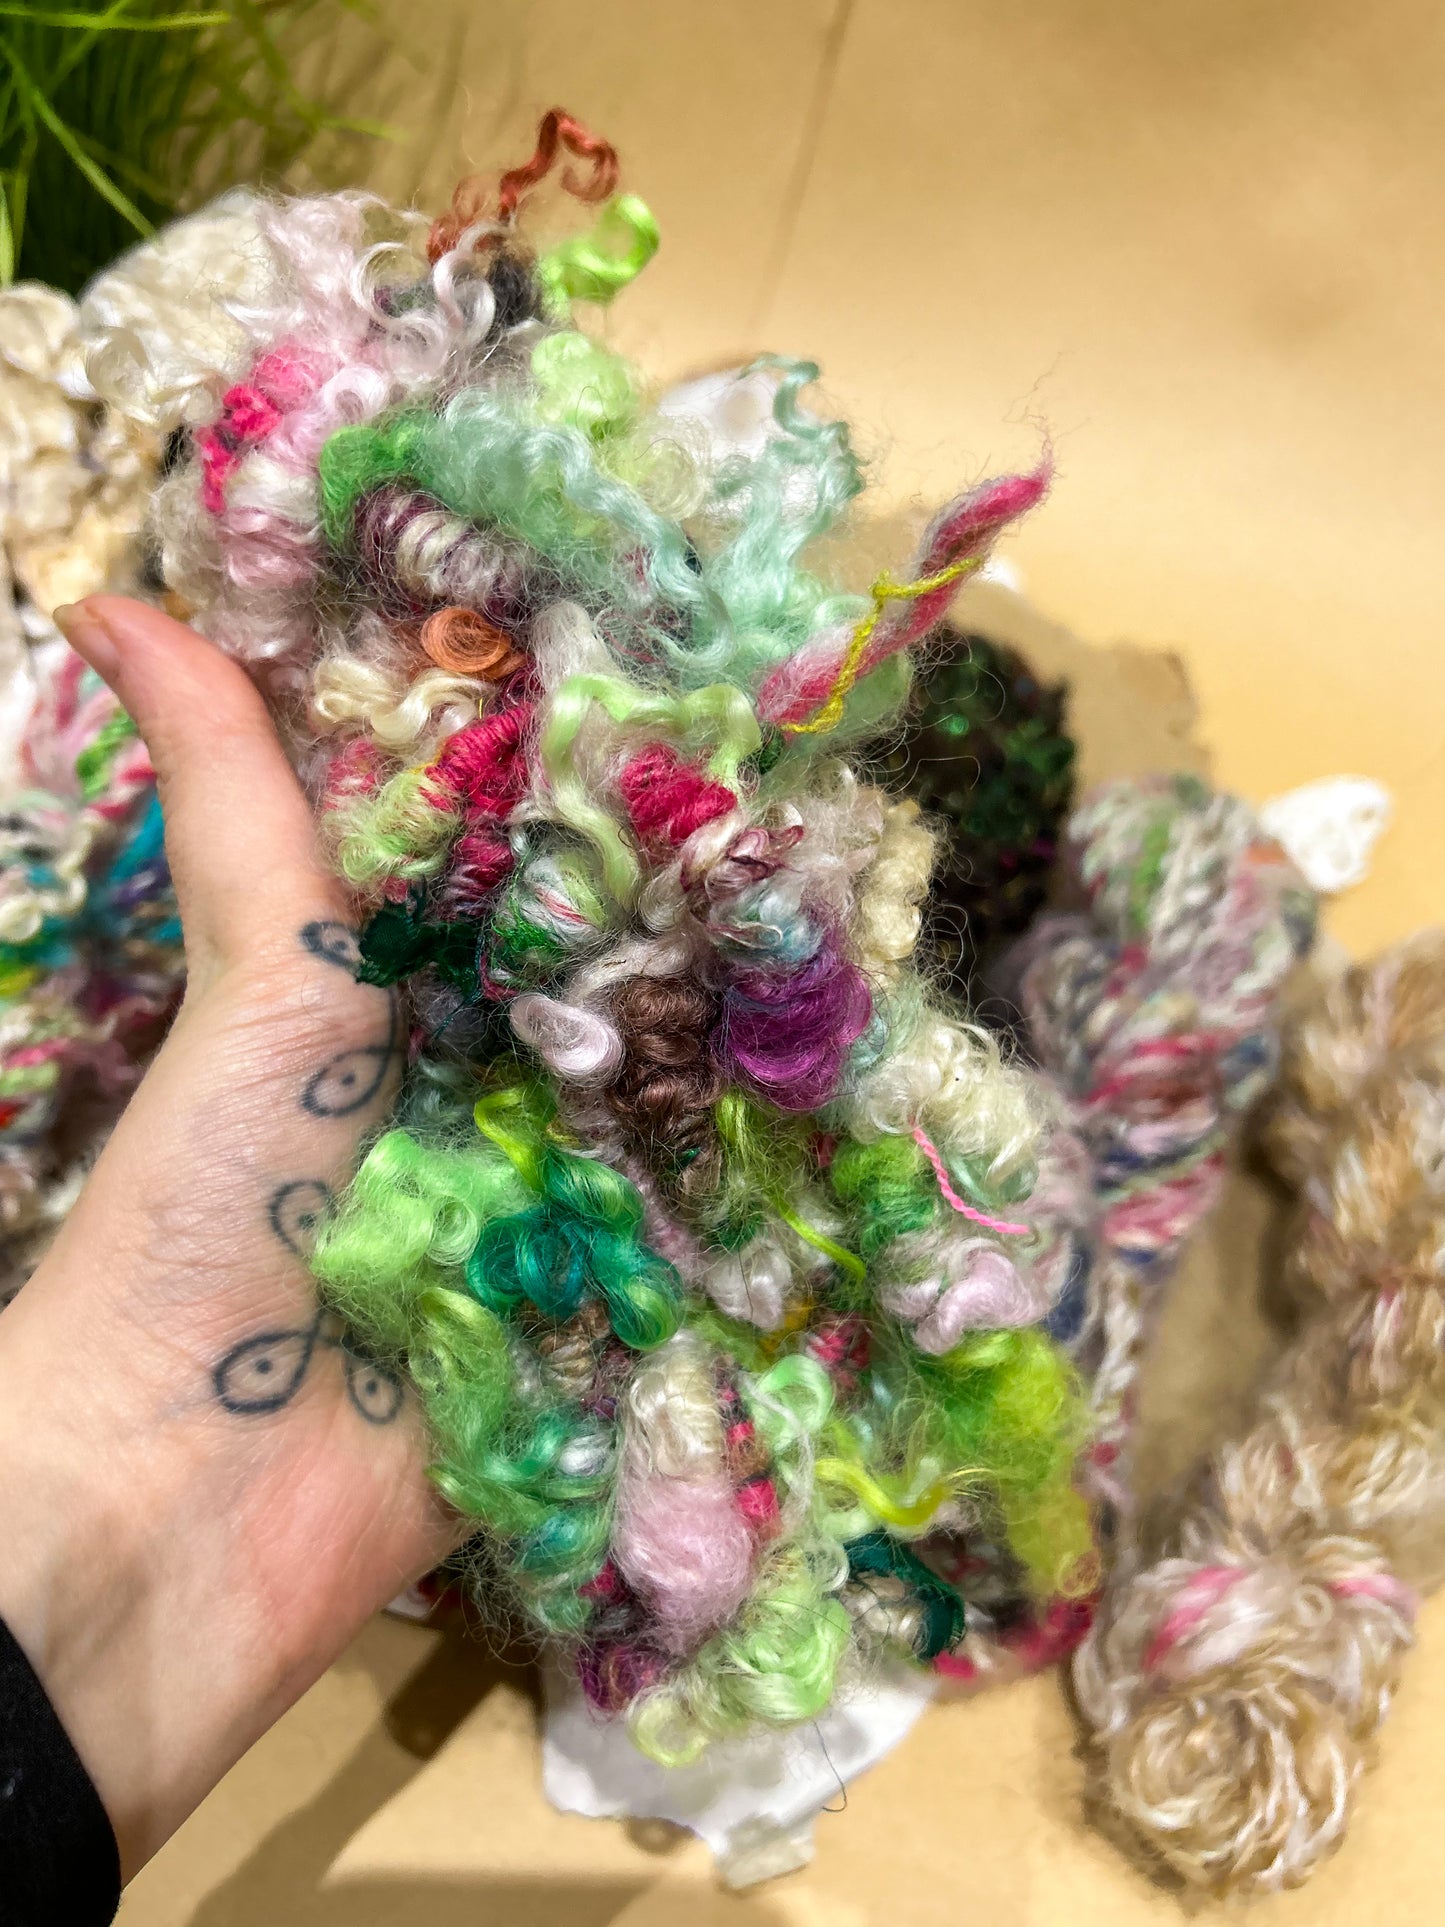 Handspun "Supercoils and Locks" teeswater, merino, ribbon and alpaca Skein ☆ 60g/4m Art Yarn